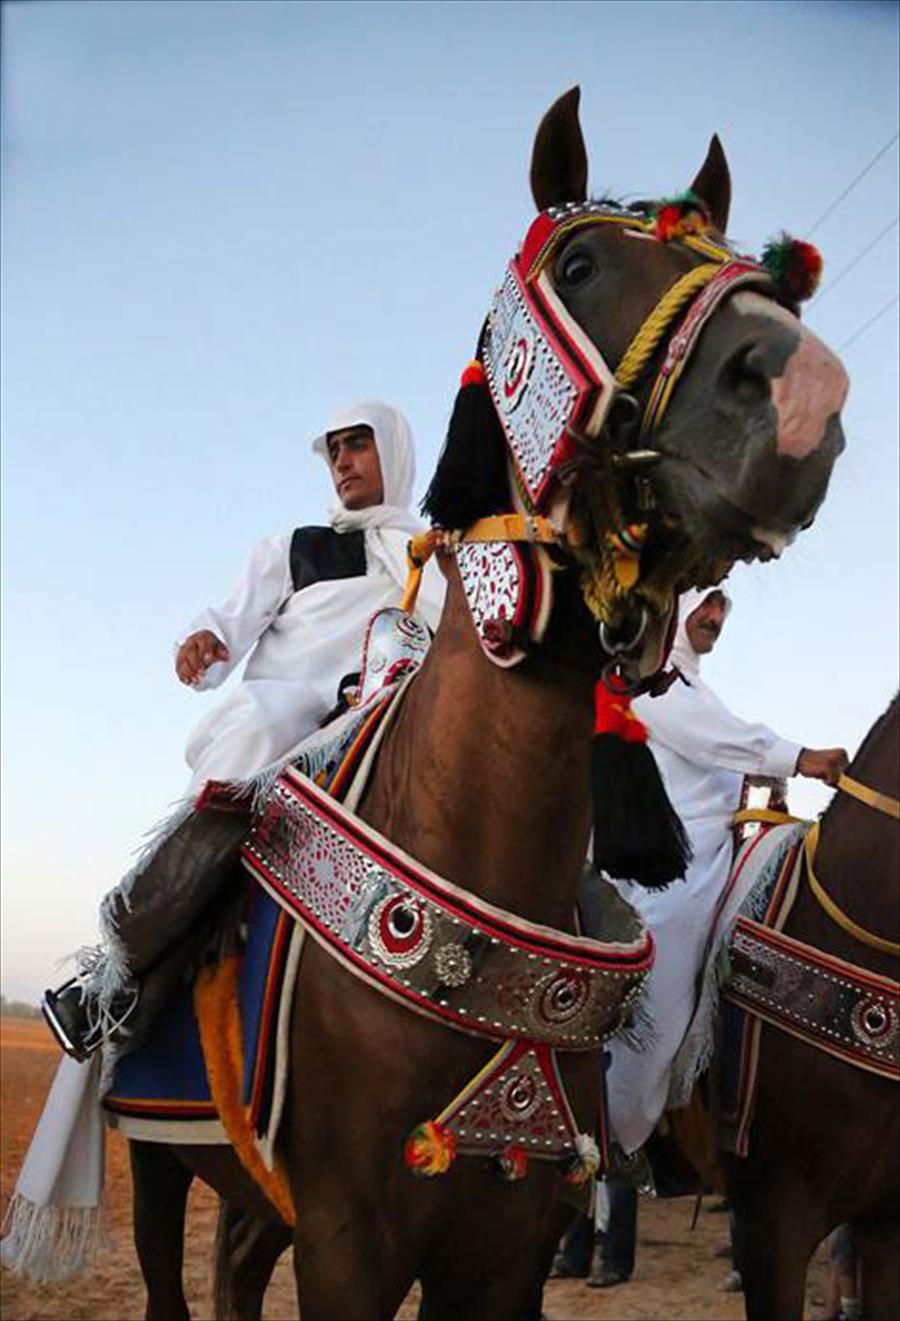 بالصور: سباق الحلبة لمربي الخيول الليبية يعود بعد غياب 42 عامًا